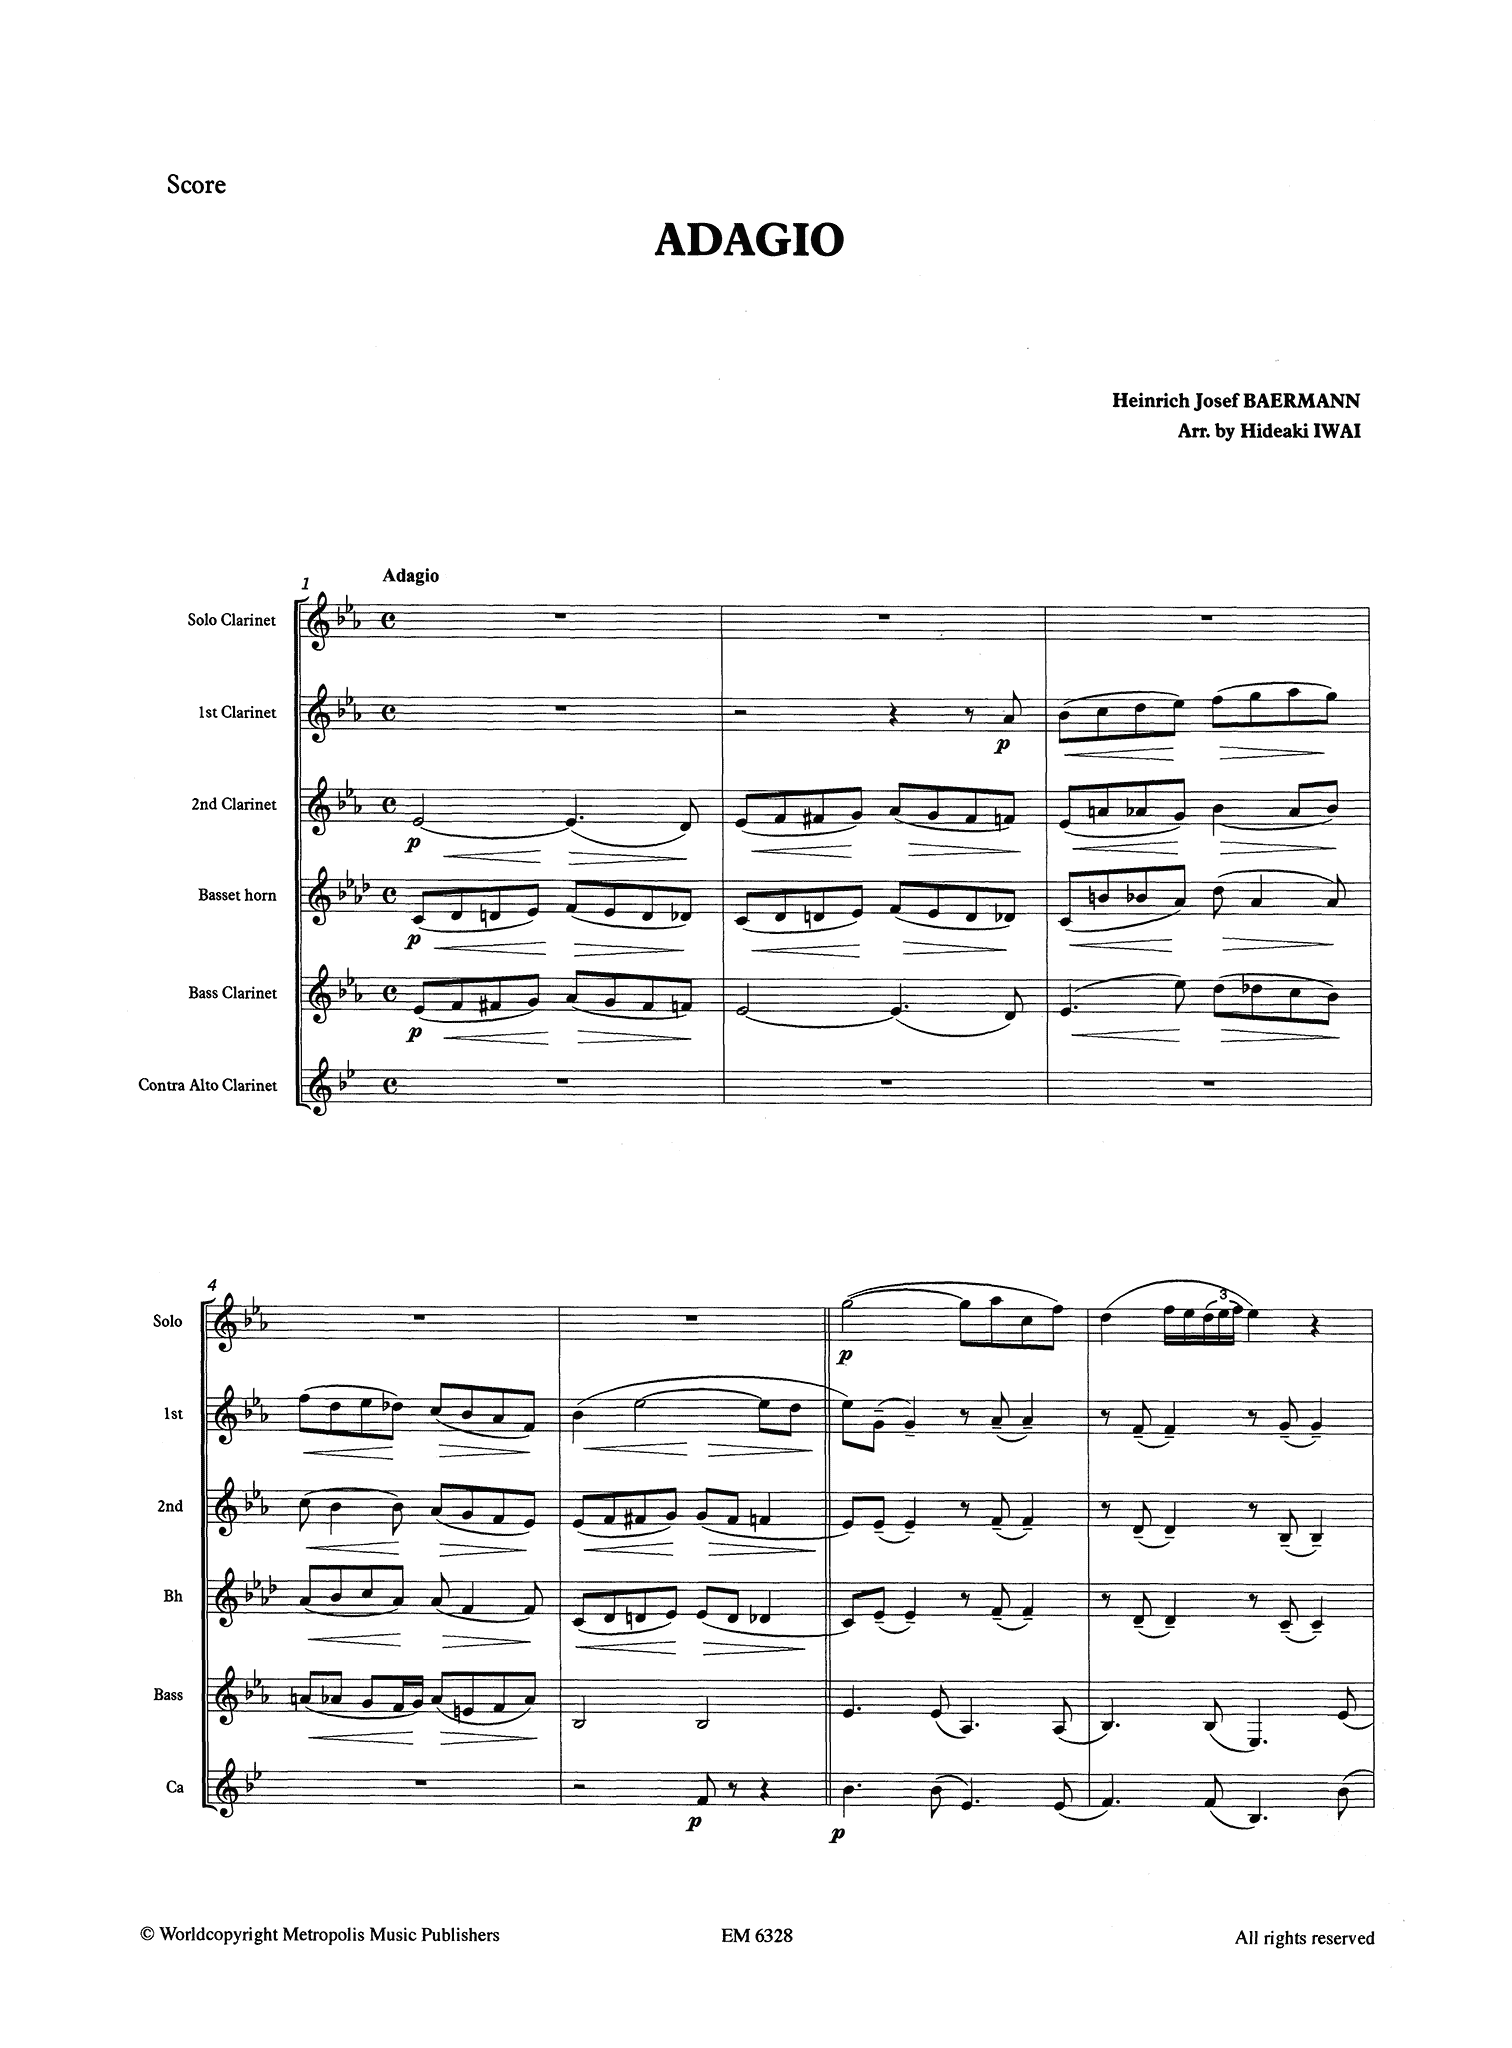 Baermann Adagio, from Op. 23 Score